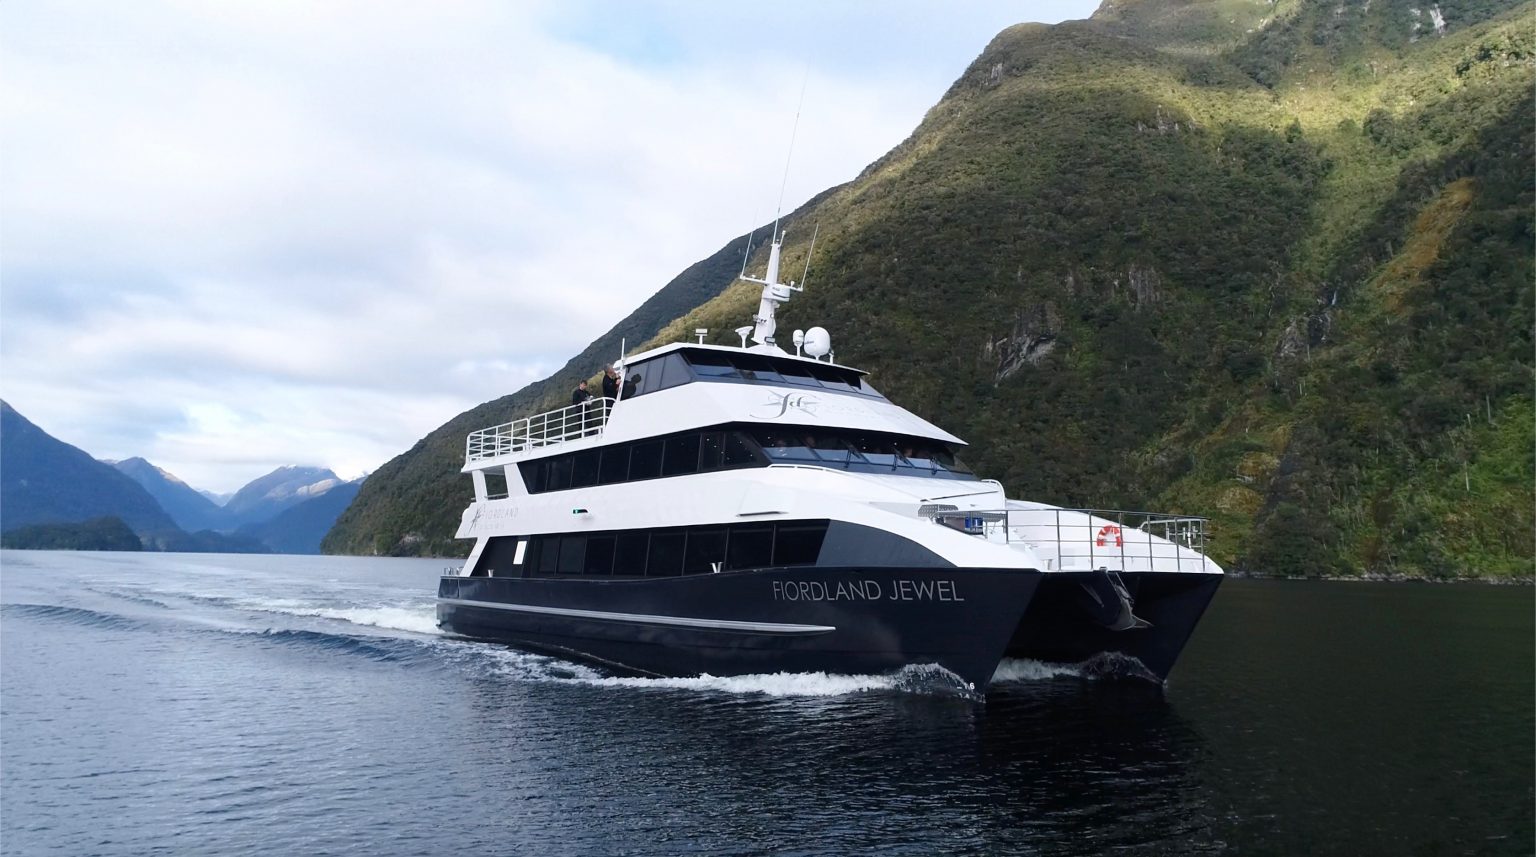 fiordland doubtful sound cruise